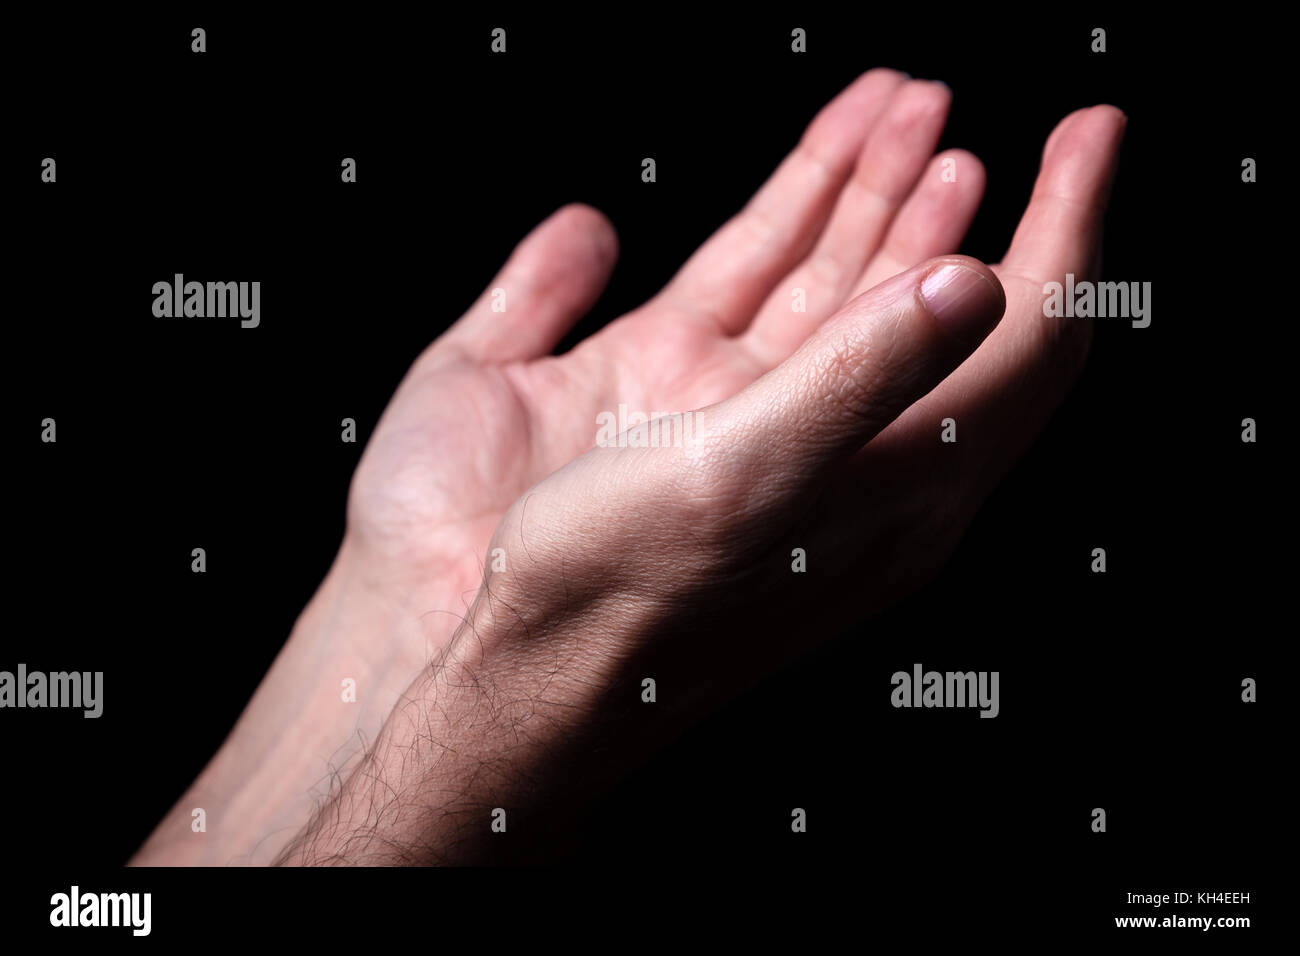 Männliche Hände betend mit Handflächen nach oben ausgestreckten Armen. schwarzer Hintergrund. Nahaufnahme der Hand. Konzept für Gebet, Glauben, Religion, religiös, Anbetung Stockfoto